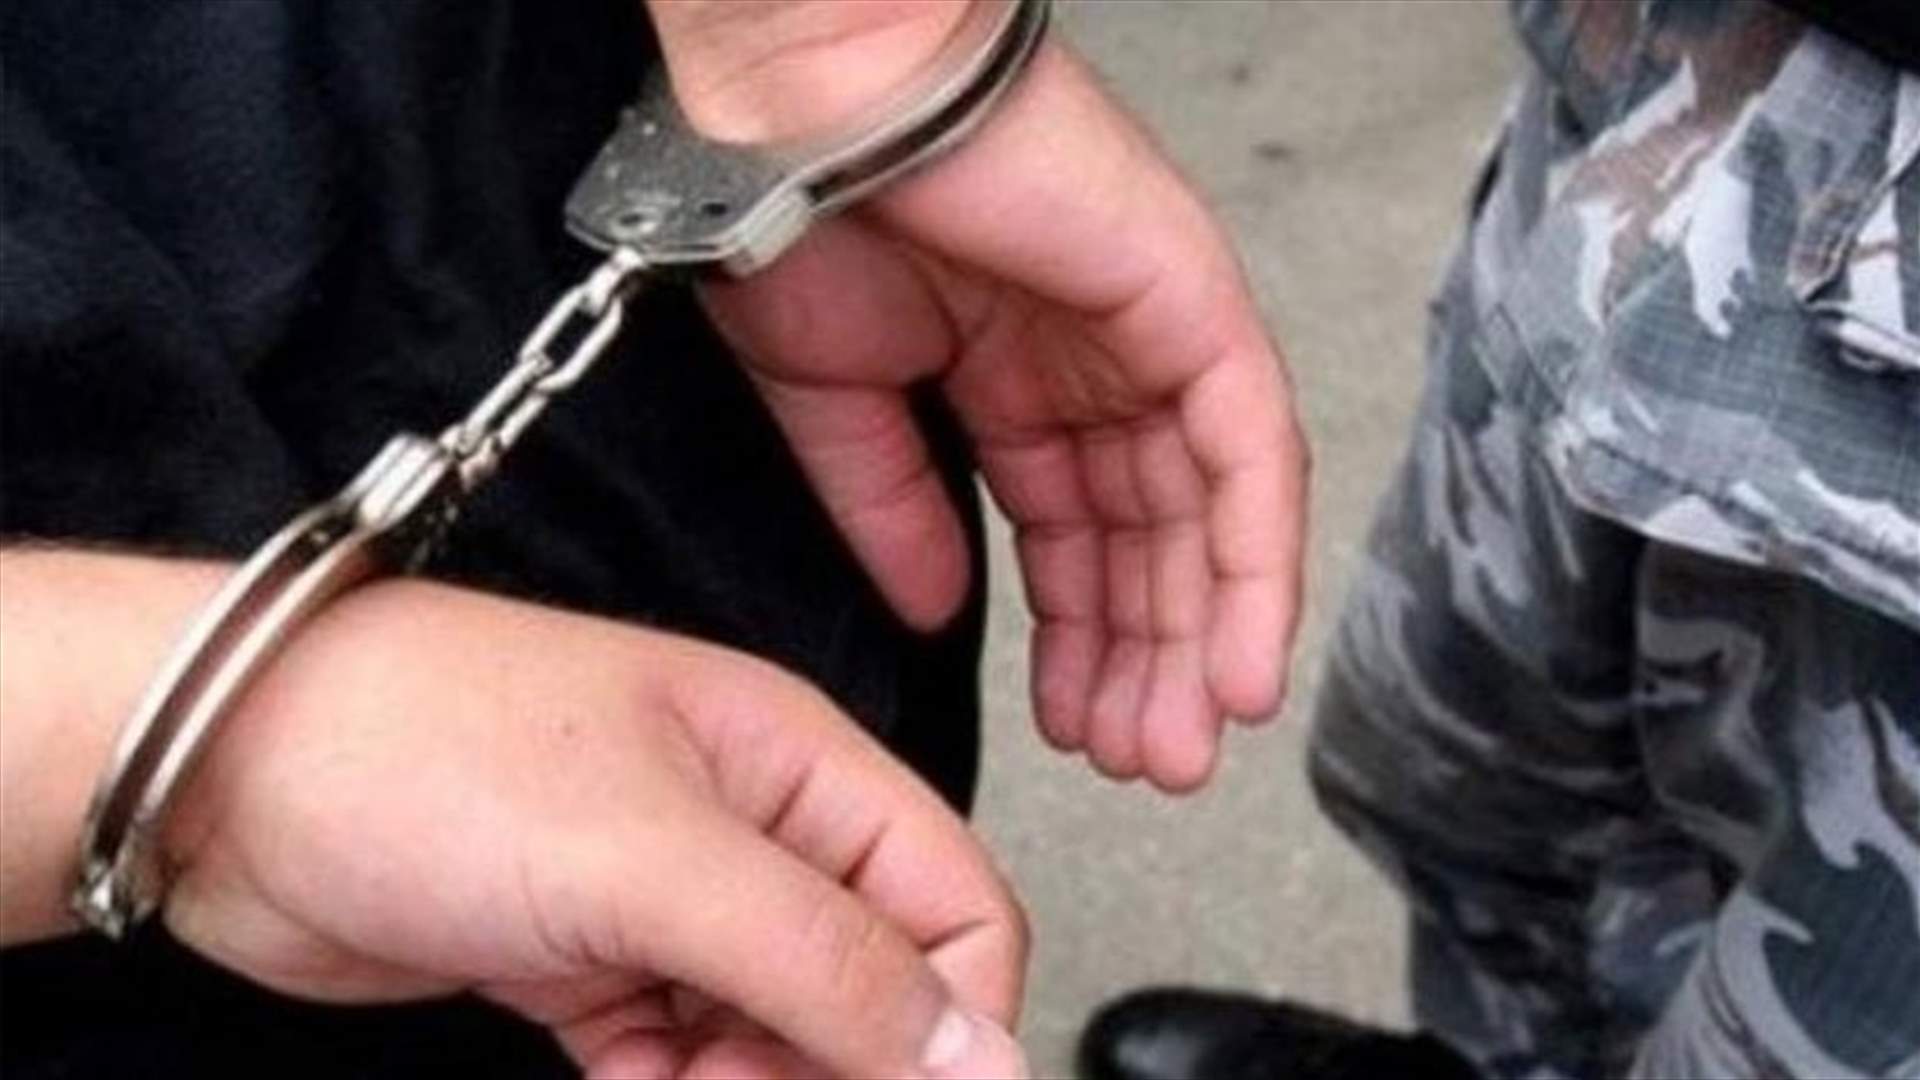 ISF arrest a drug dealer in Beirut 